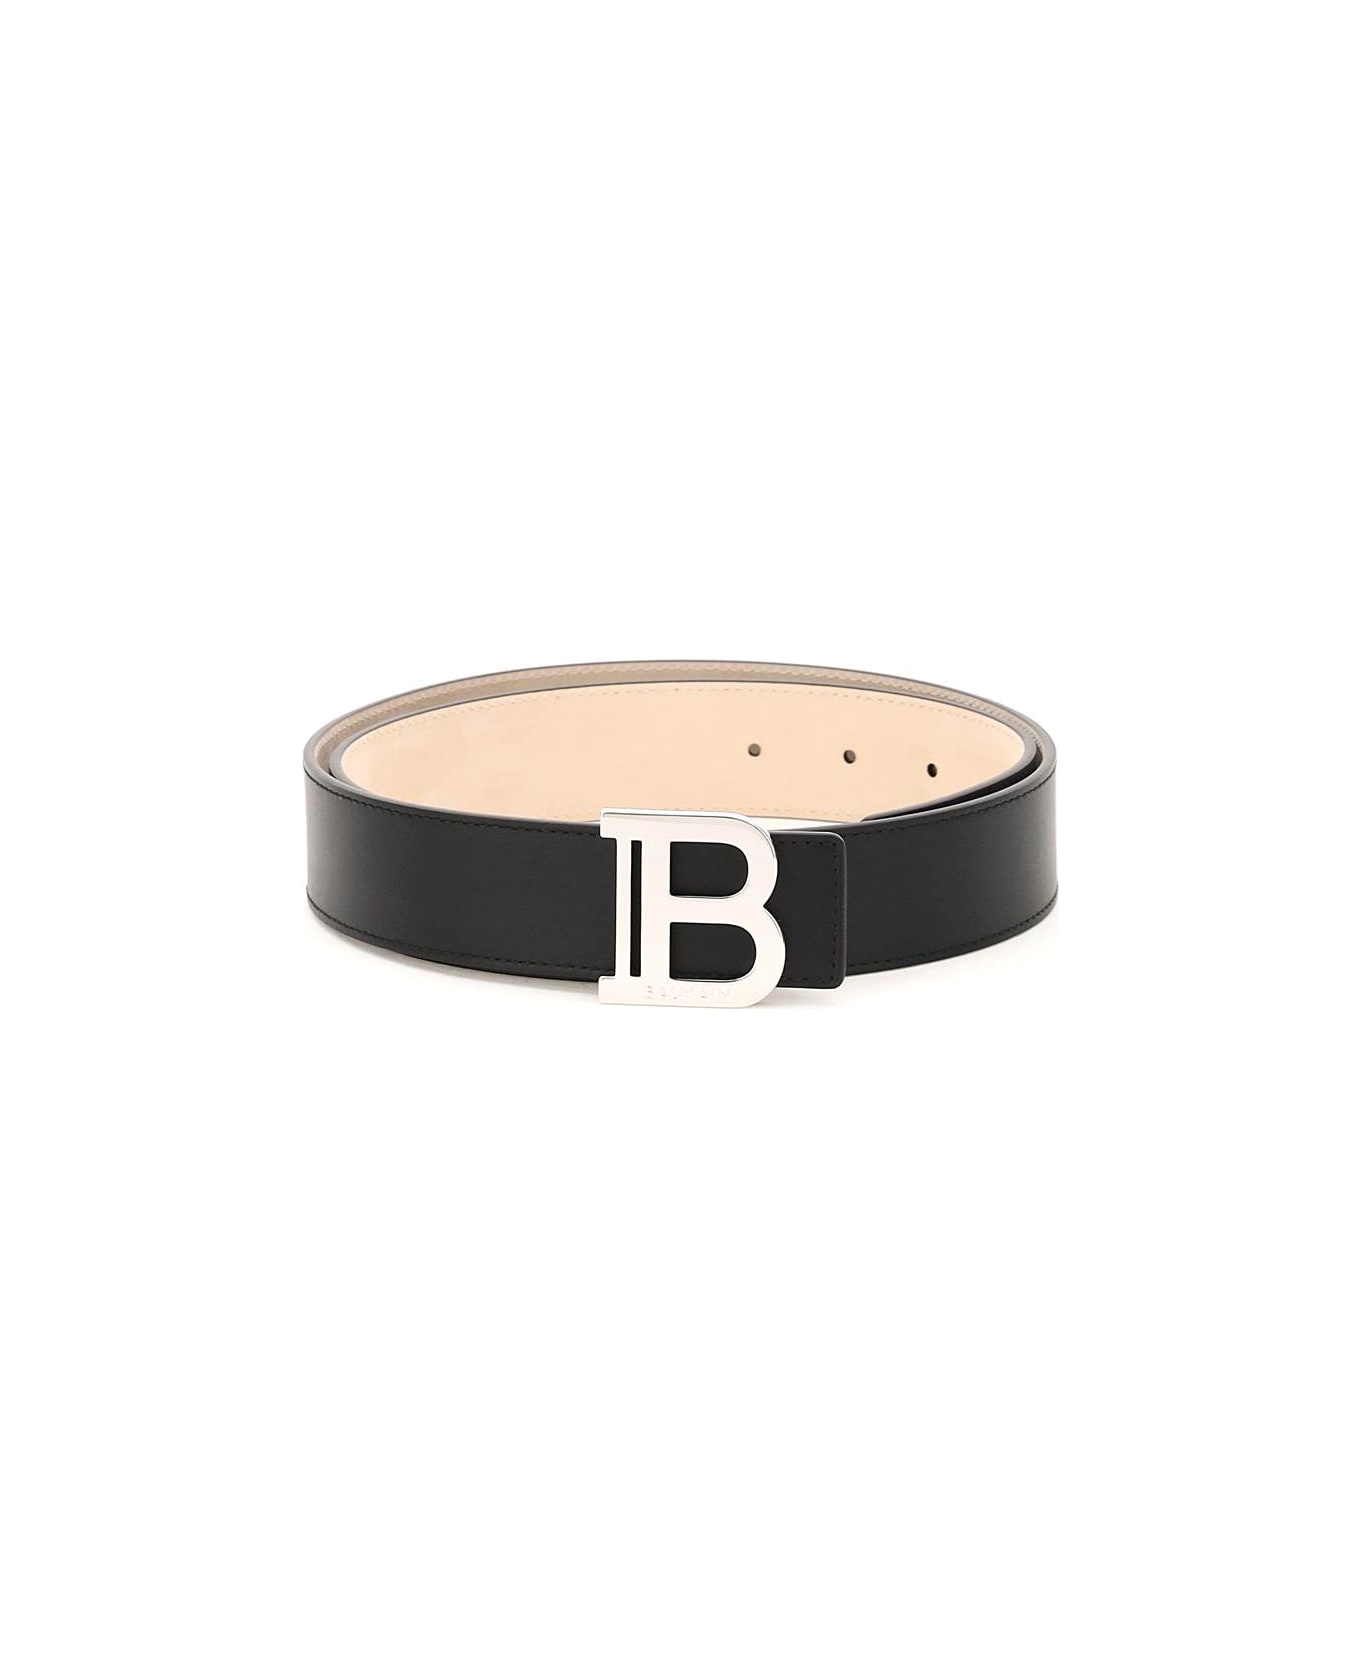 Balmain B-belt Leather Belt - Noir ベルト